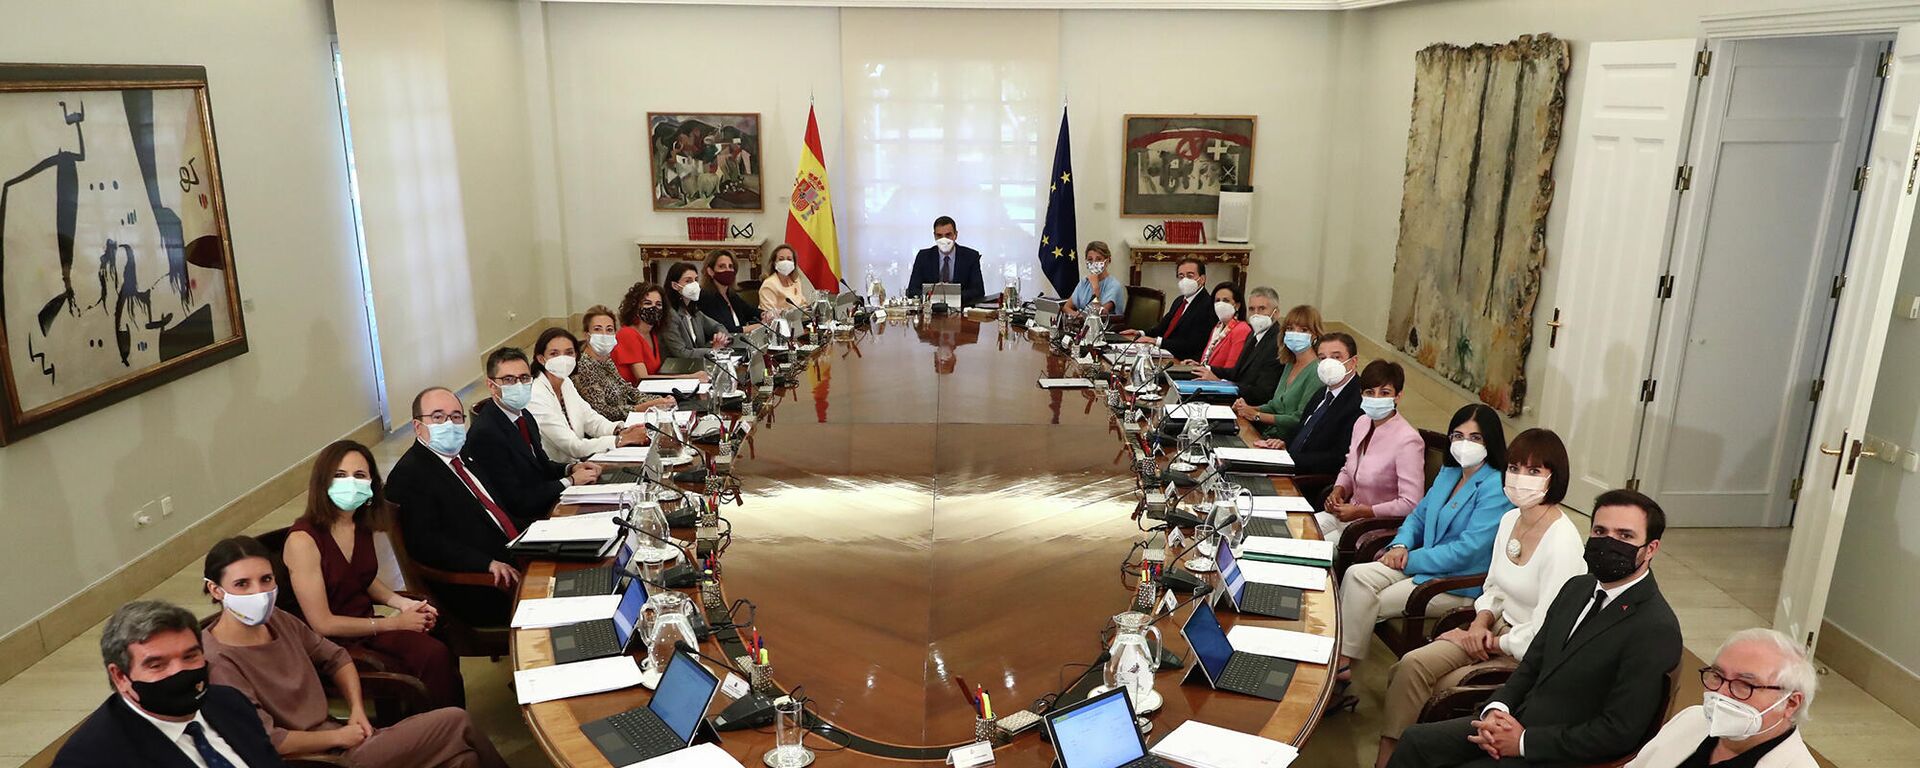 Reunión del Consejo de Ministros de España del 13 de julio de 2021 - Sputnik Mundo, 1920, 20.07.2021